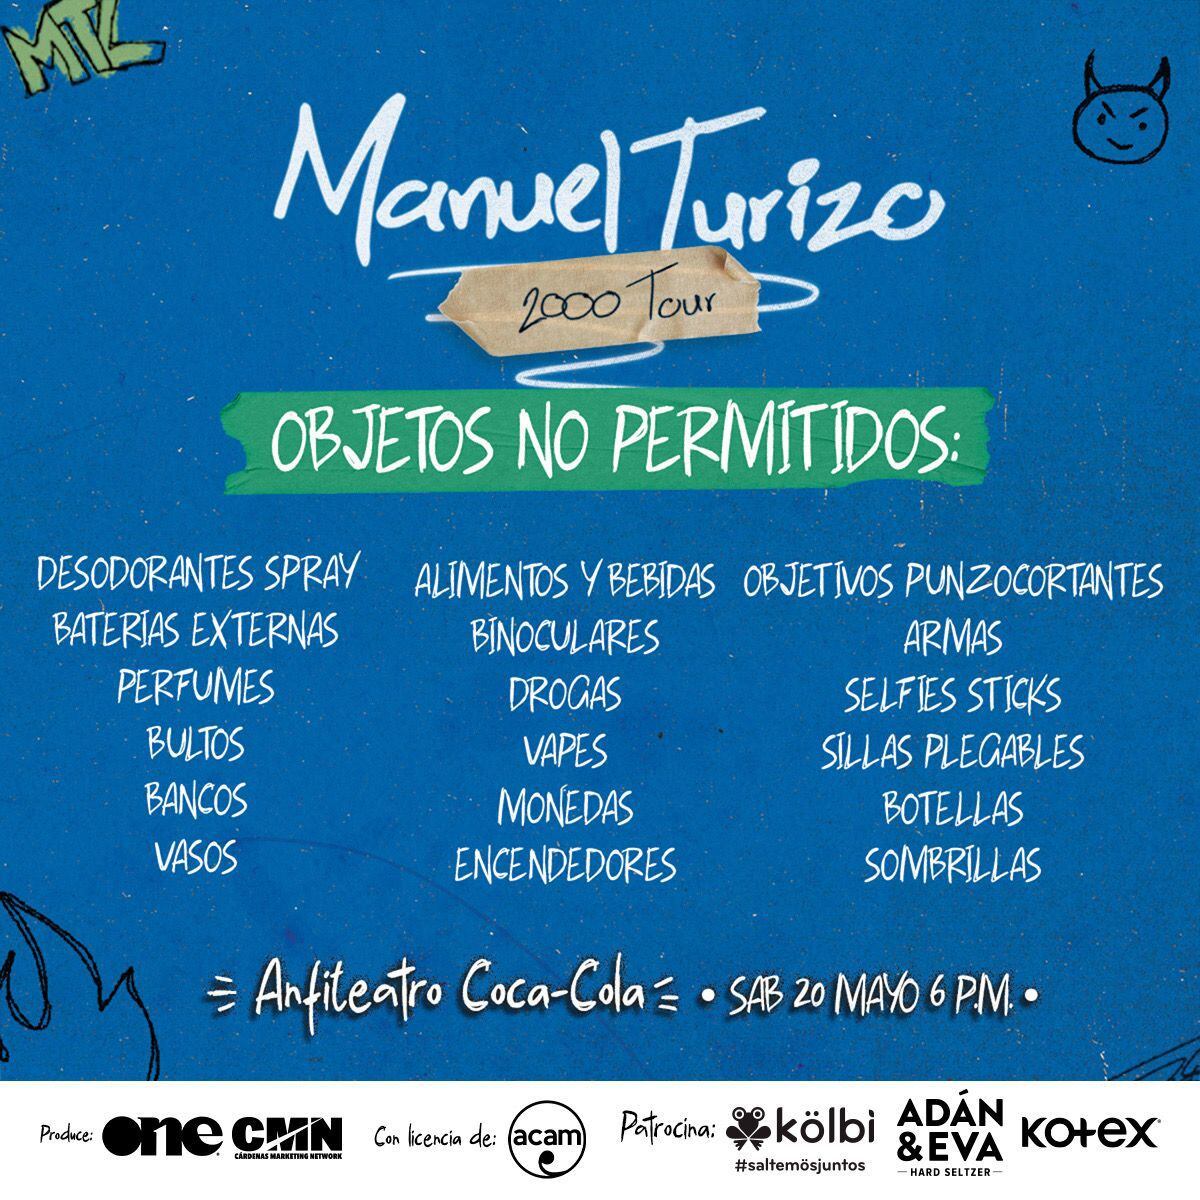 Objetos que no son permitidos ingresar al concierto de Manuel Turizo.